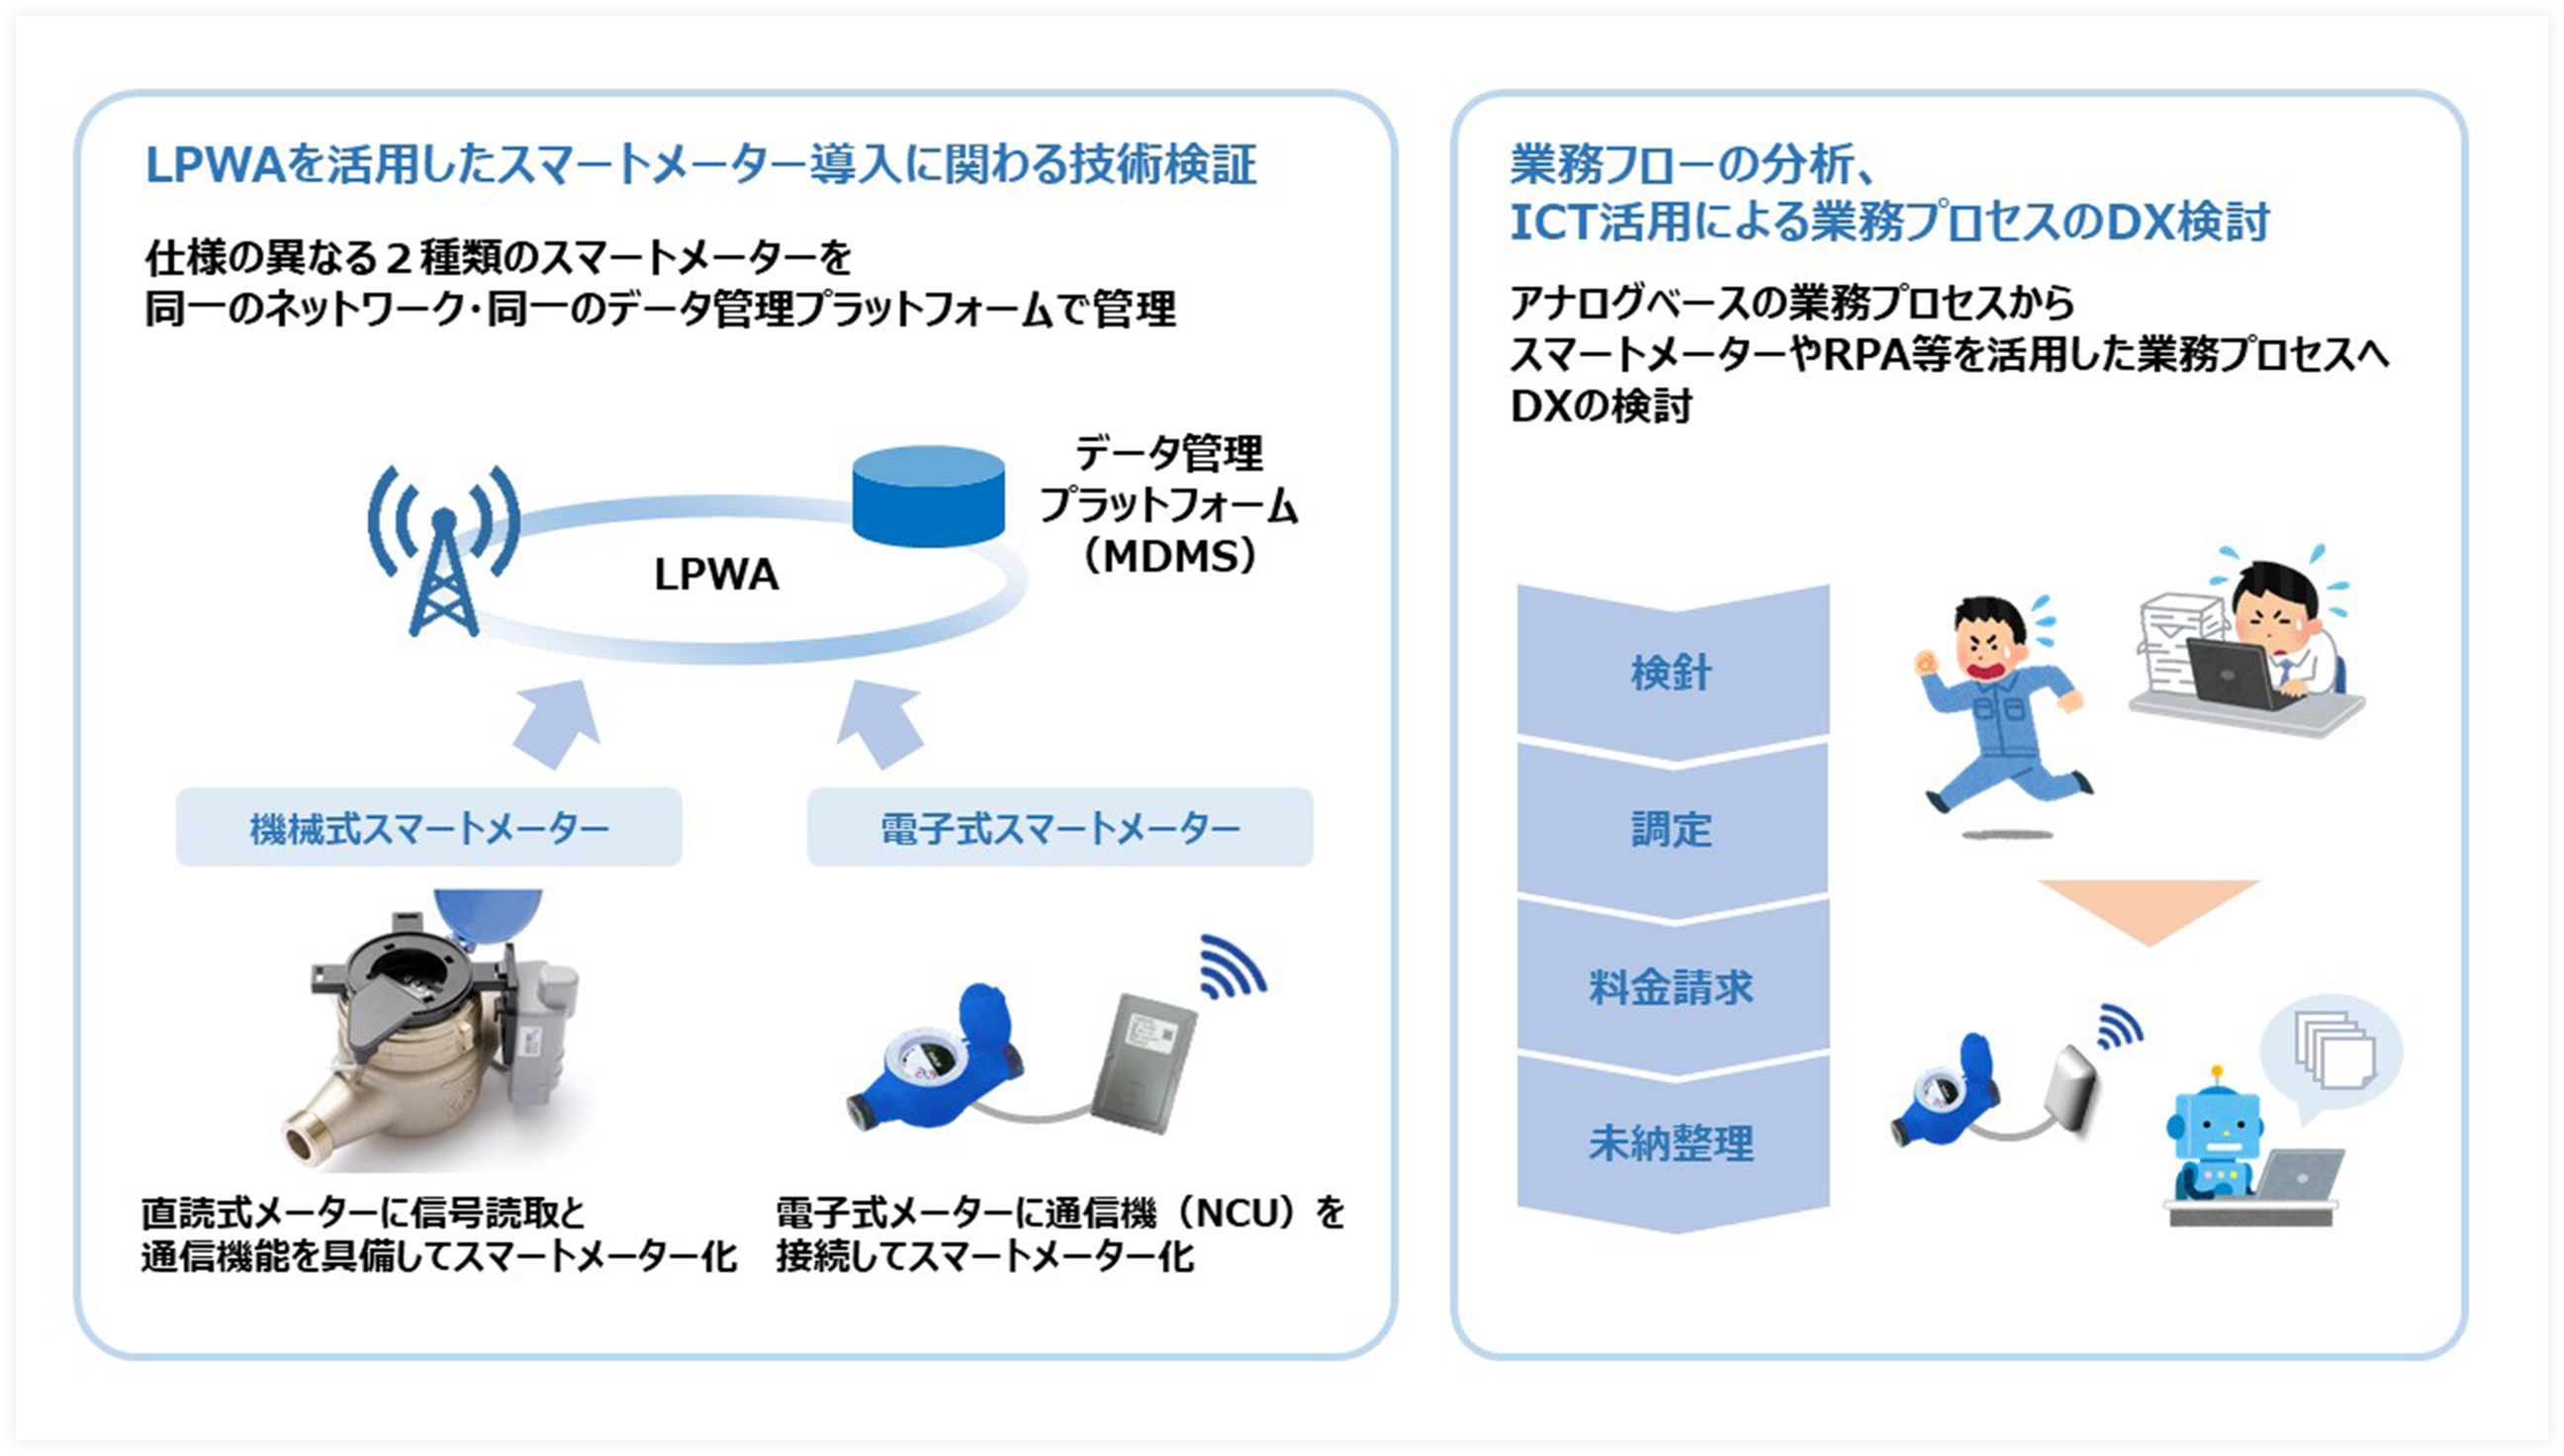 大阪市域における水道スマートメーターの全戸導入に向けたシミュレーションに関する共同研究